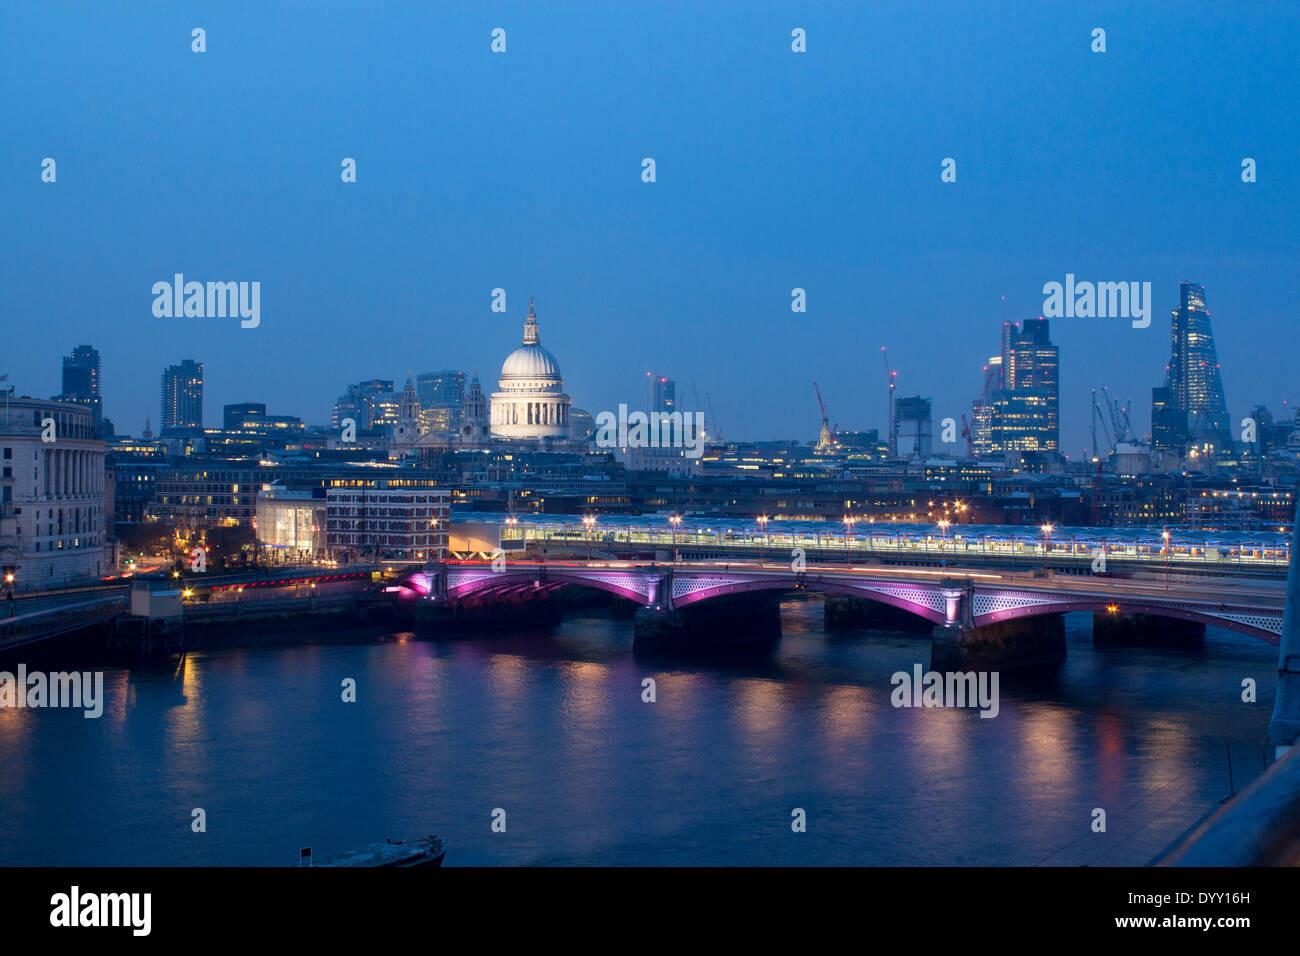 Ville de London Skyline, Blackfriars Bridge et la Tamise de nuit à partir de la Oxo Tower London England UK Banque D'Images